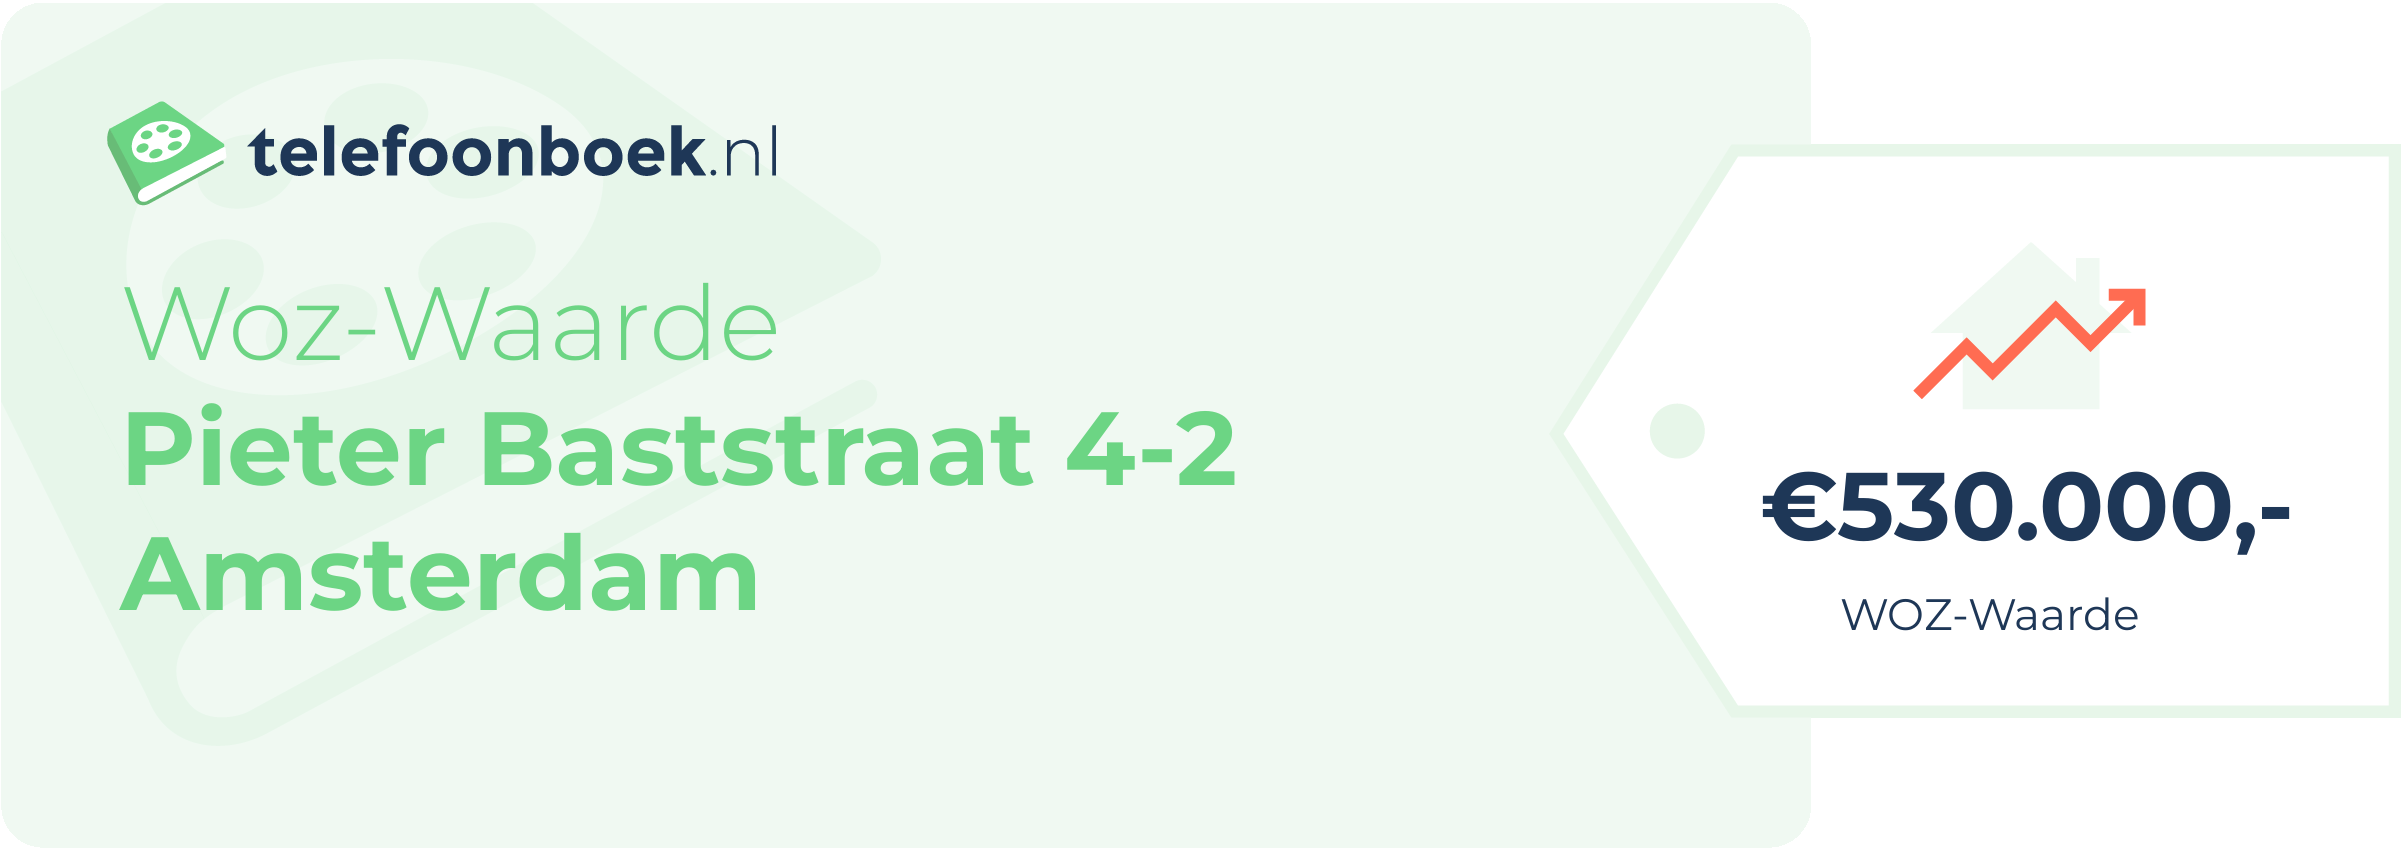 WOZ-waarde Pieter Baststraat 4-2 Amsterdam